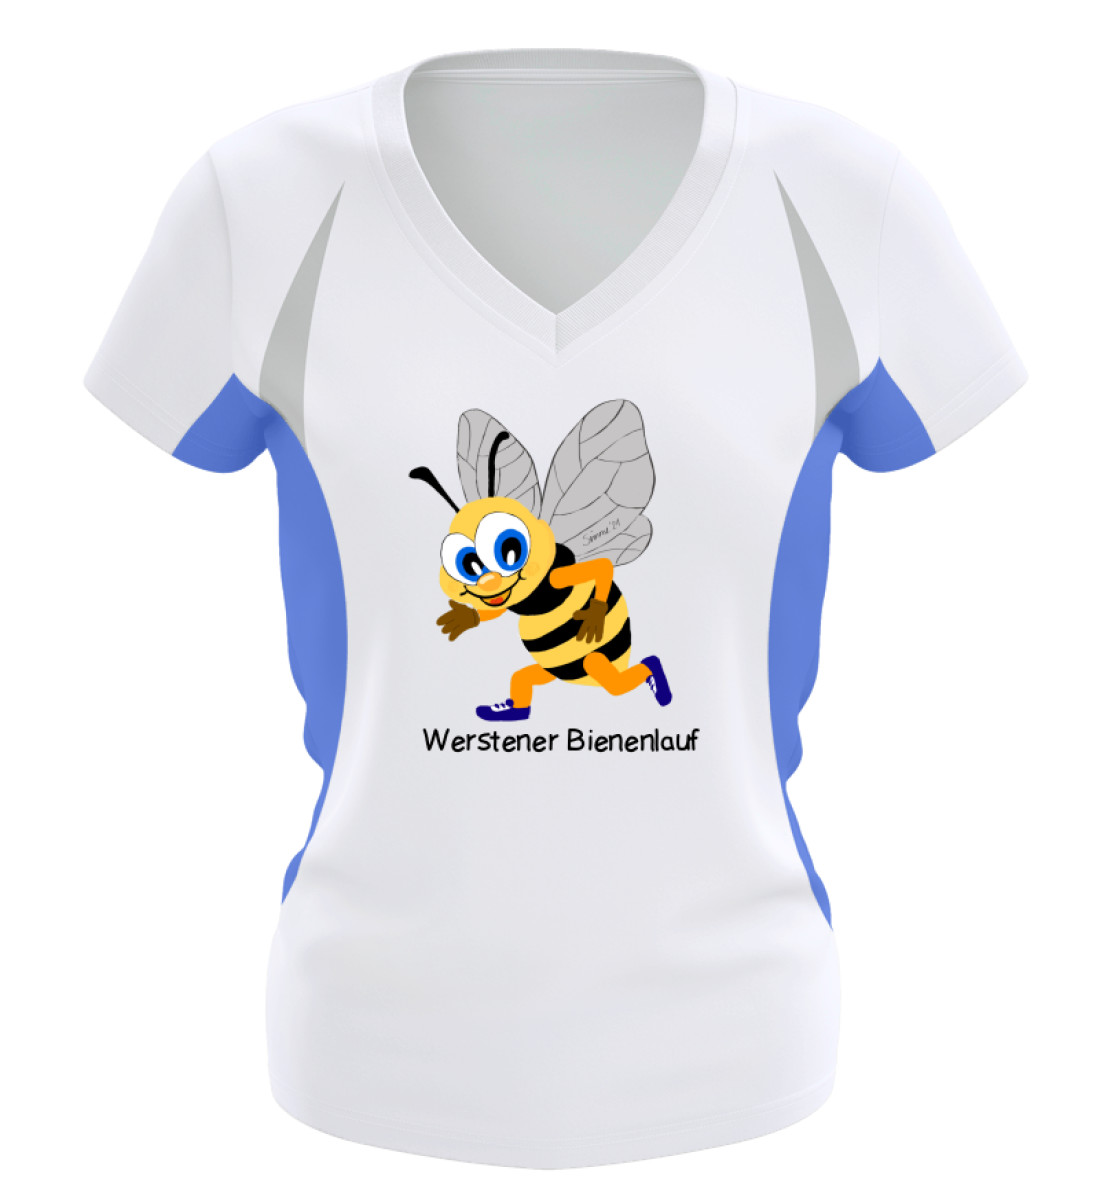 Werstener Bienenlauf - Frauen Laufshirt tailliert geschnitten-6751